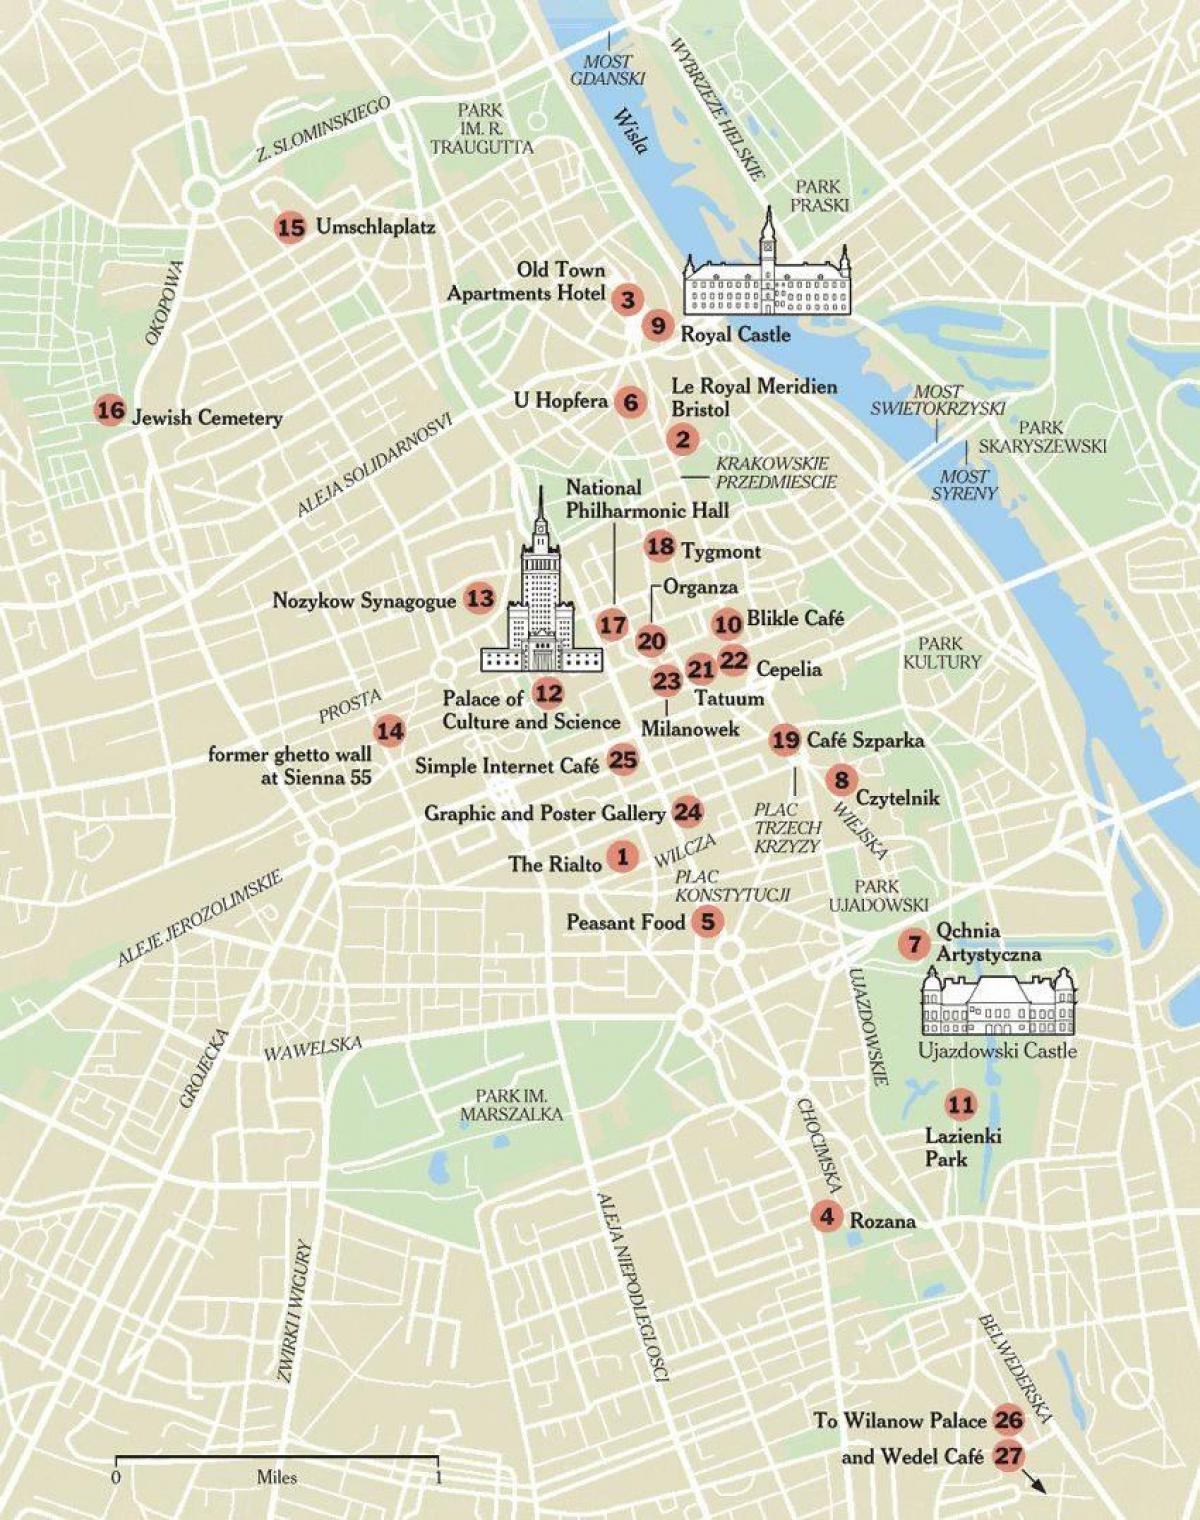 забележителности във Варшава картата